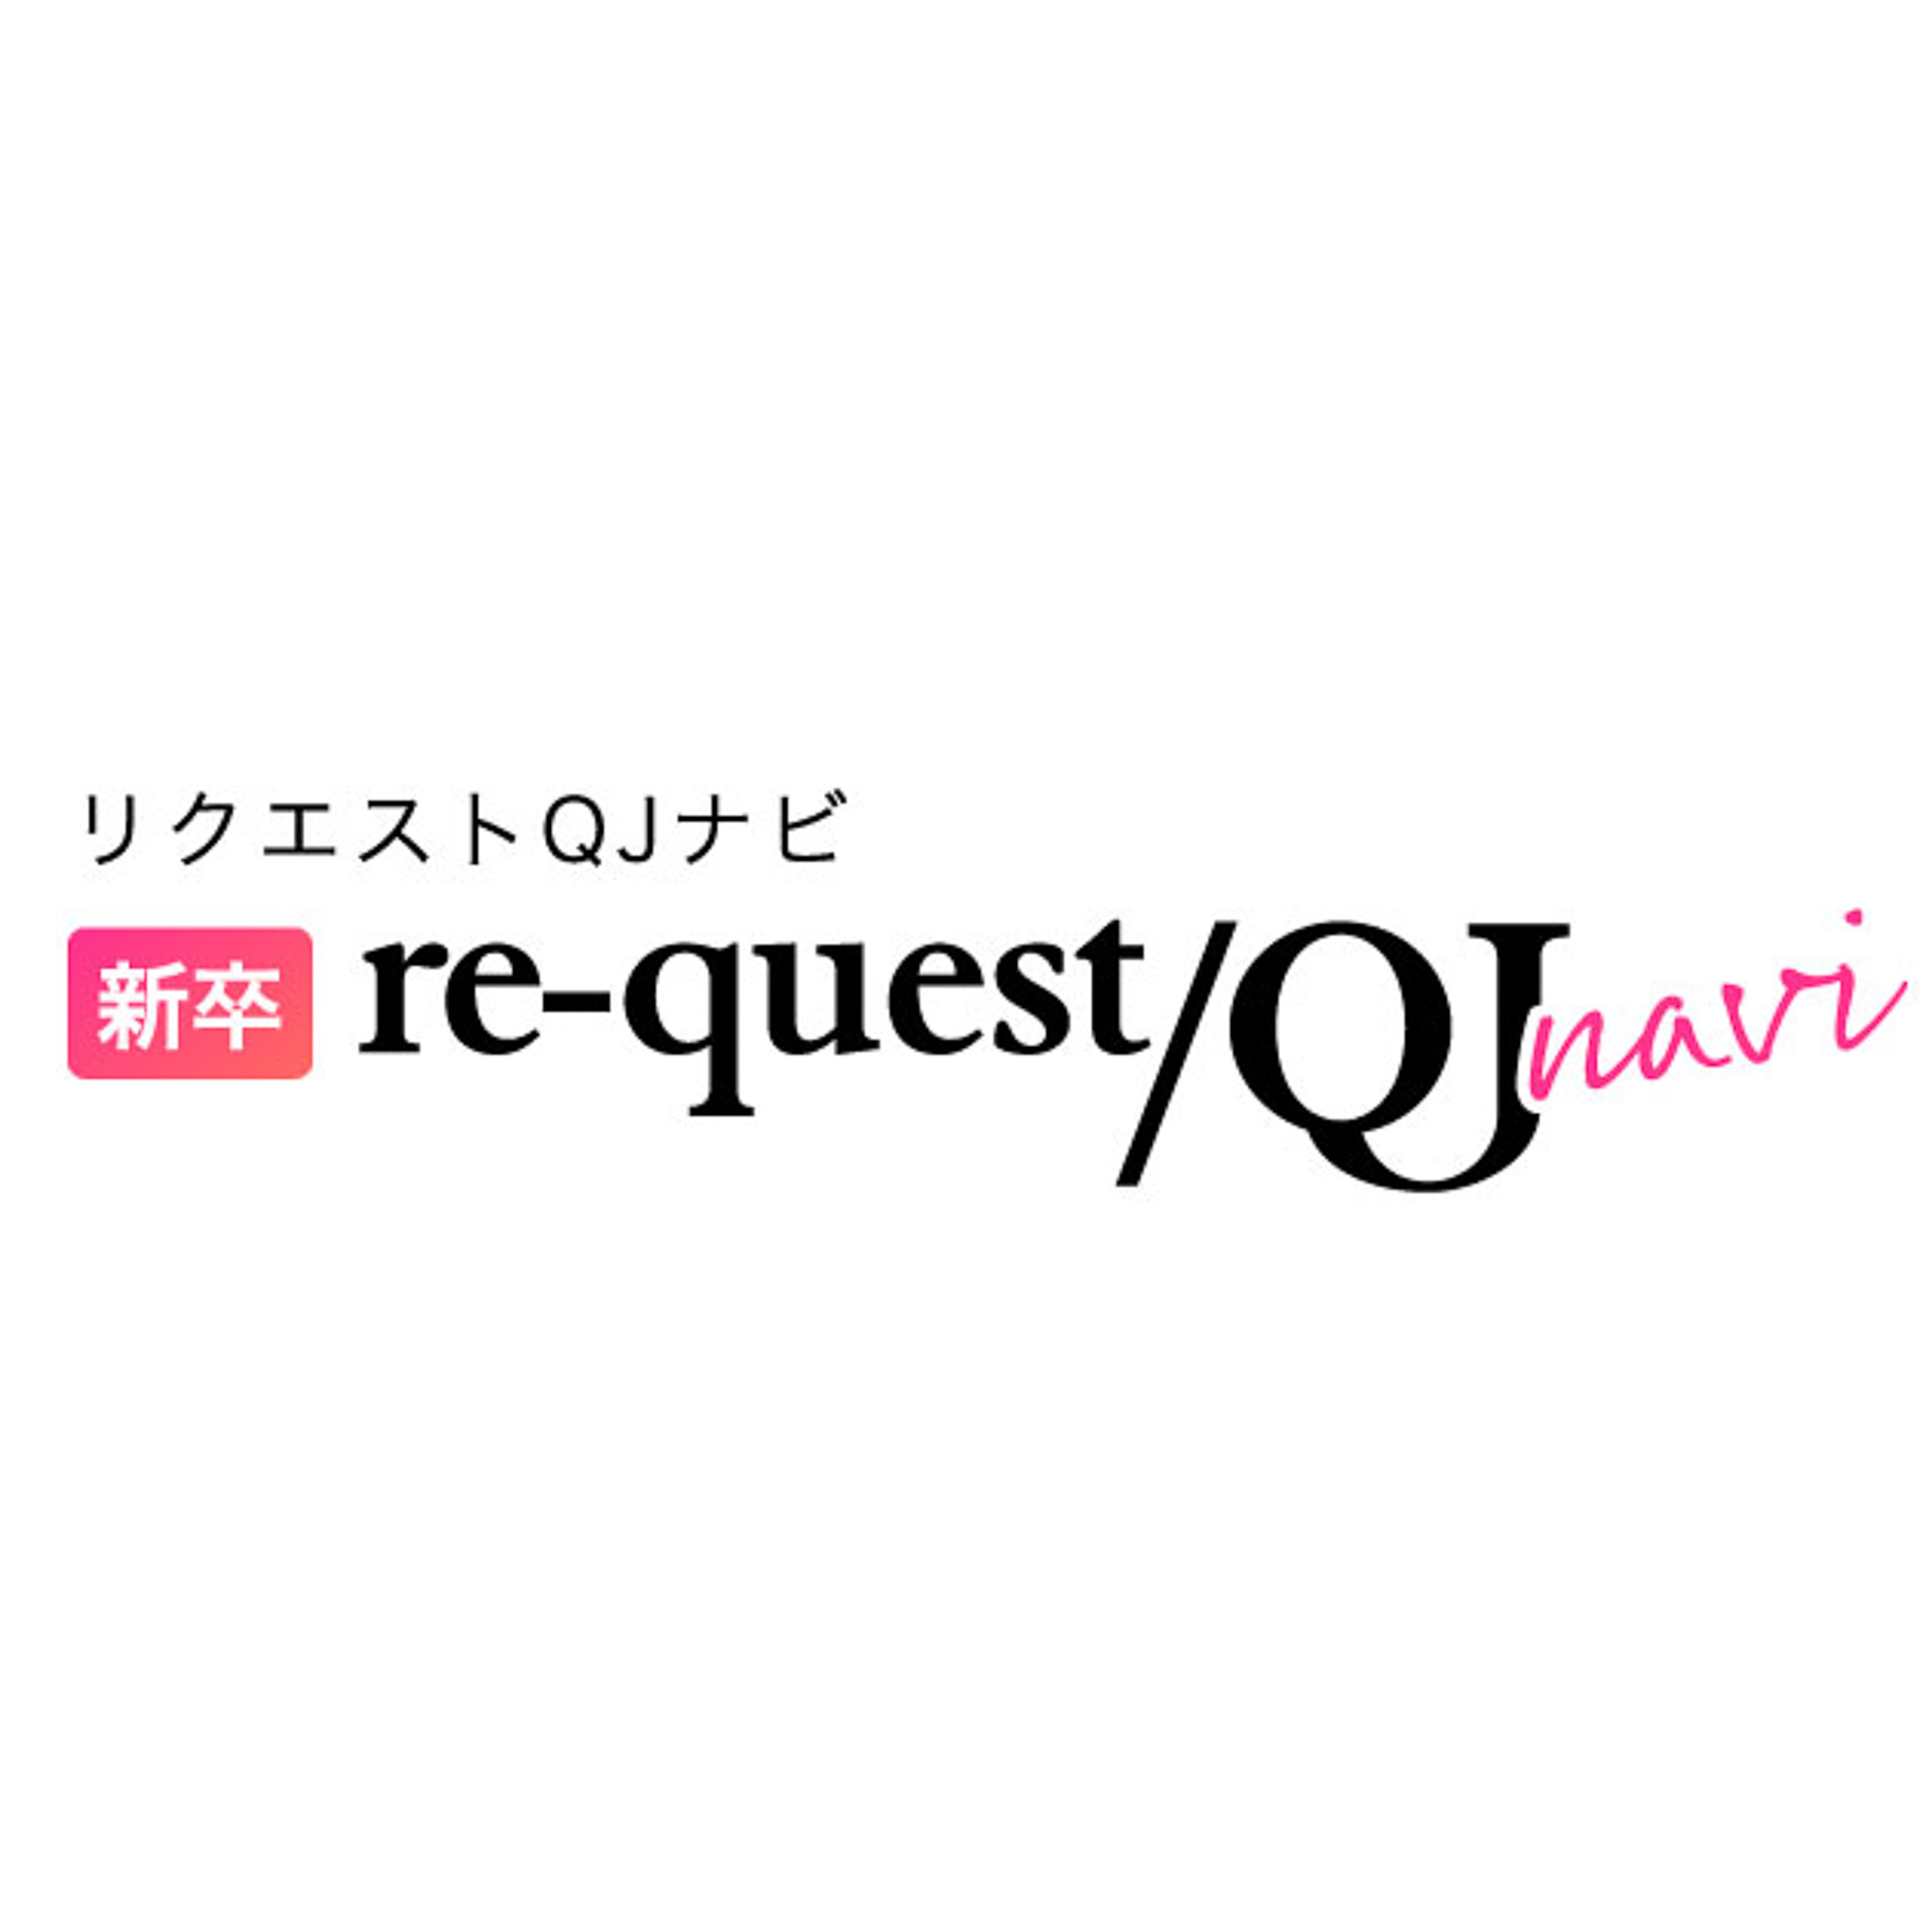 新卒 re-quest/QJ navi